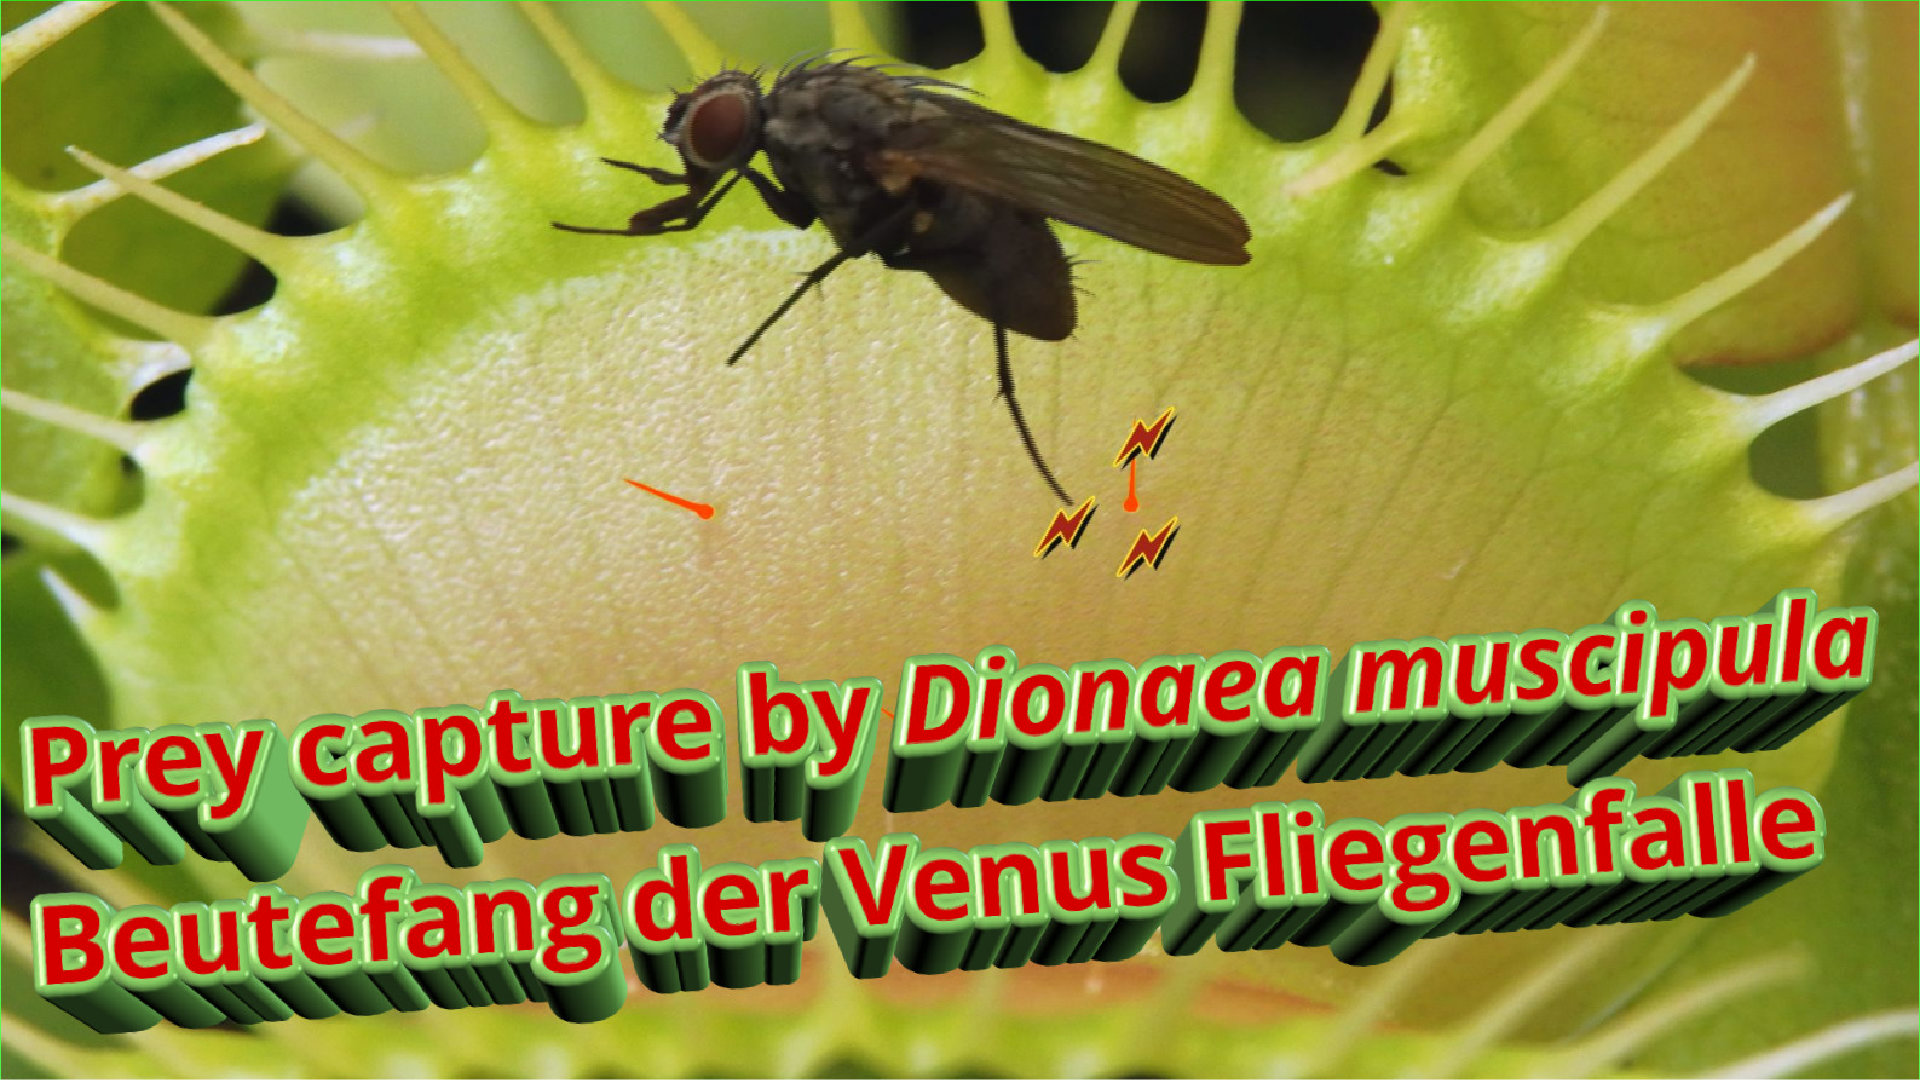 Dionaea Beutefang